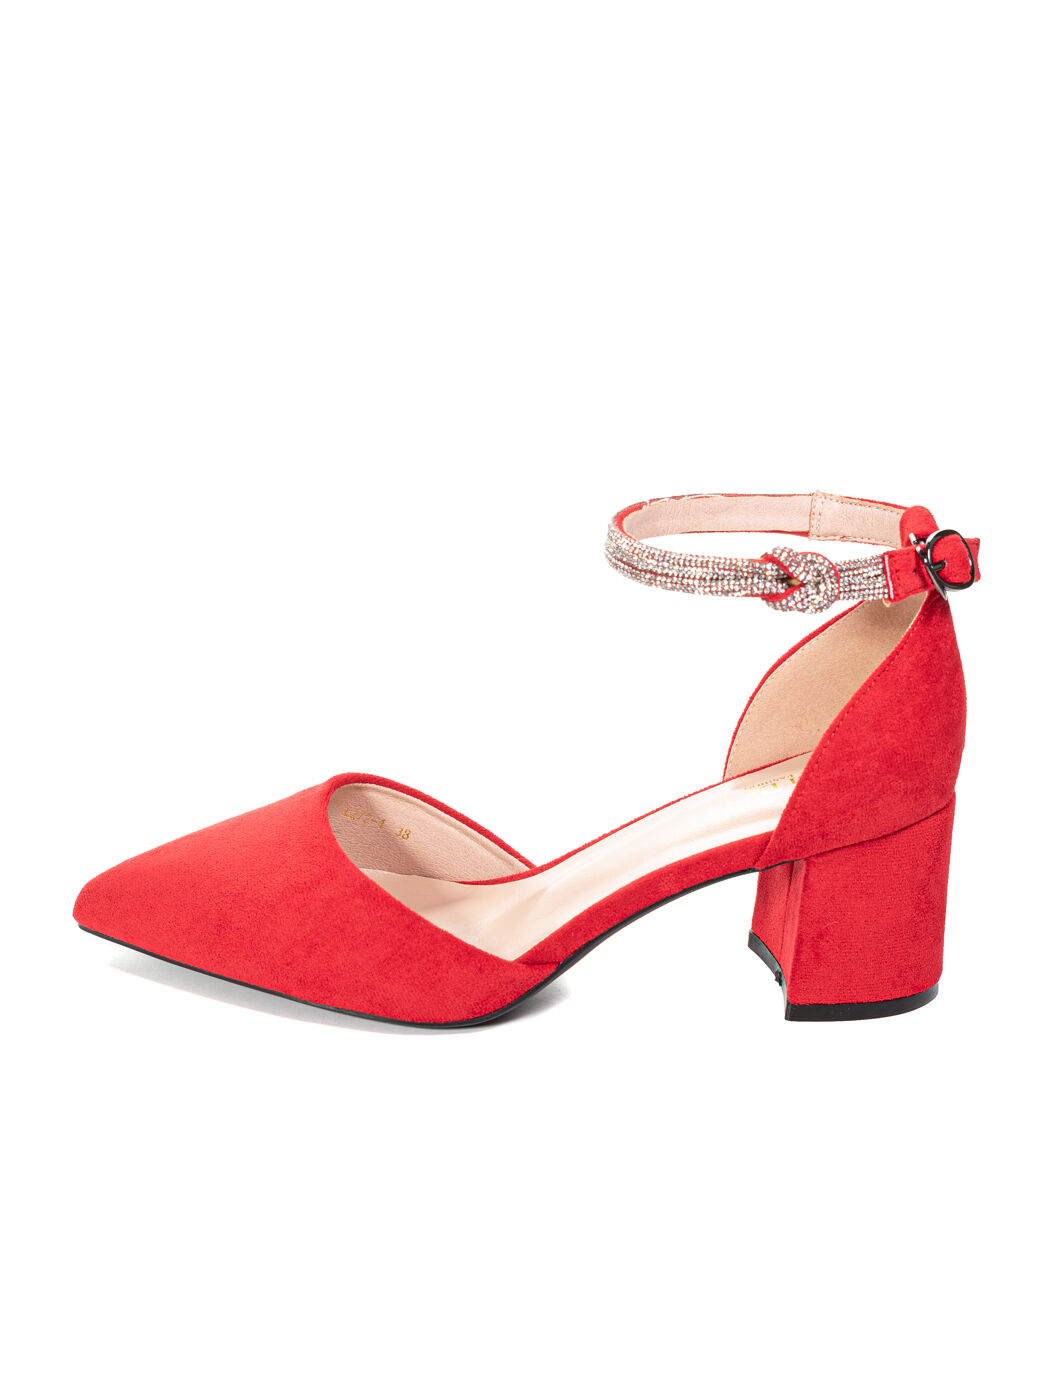 Туфли лодочки женские красные экозамша каблук устойчивый лето 1-red-M